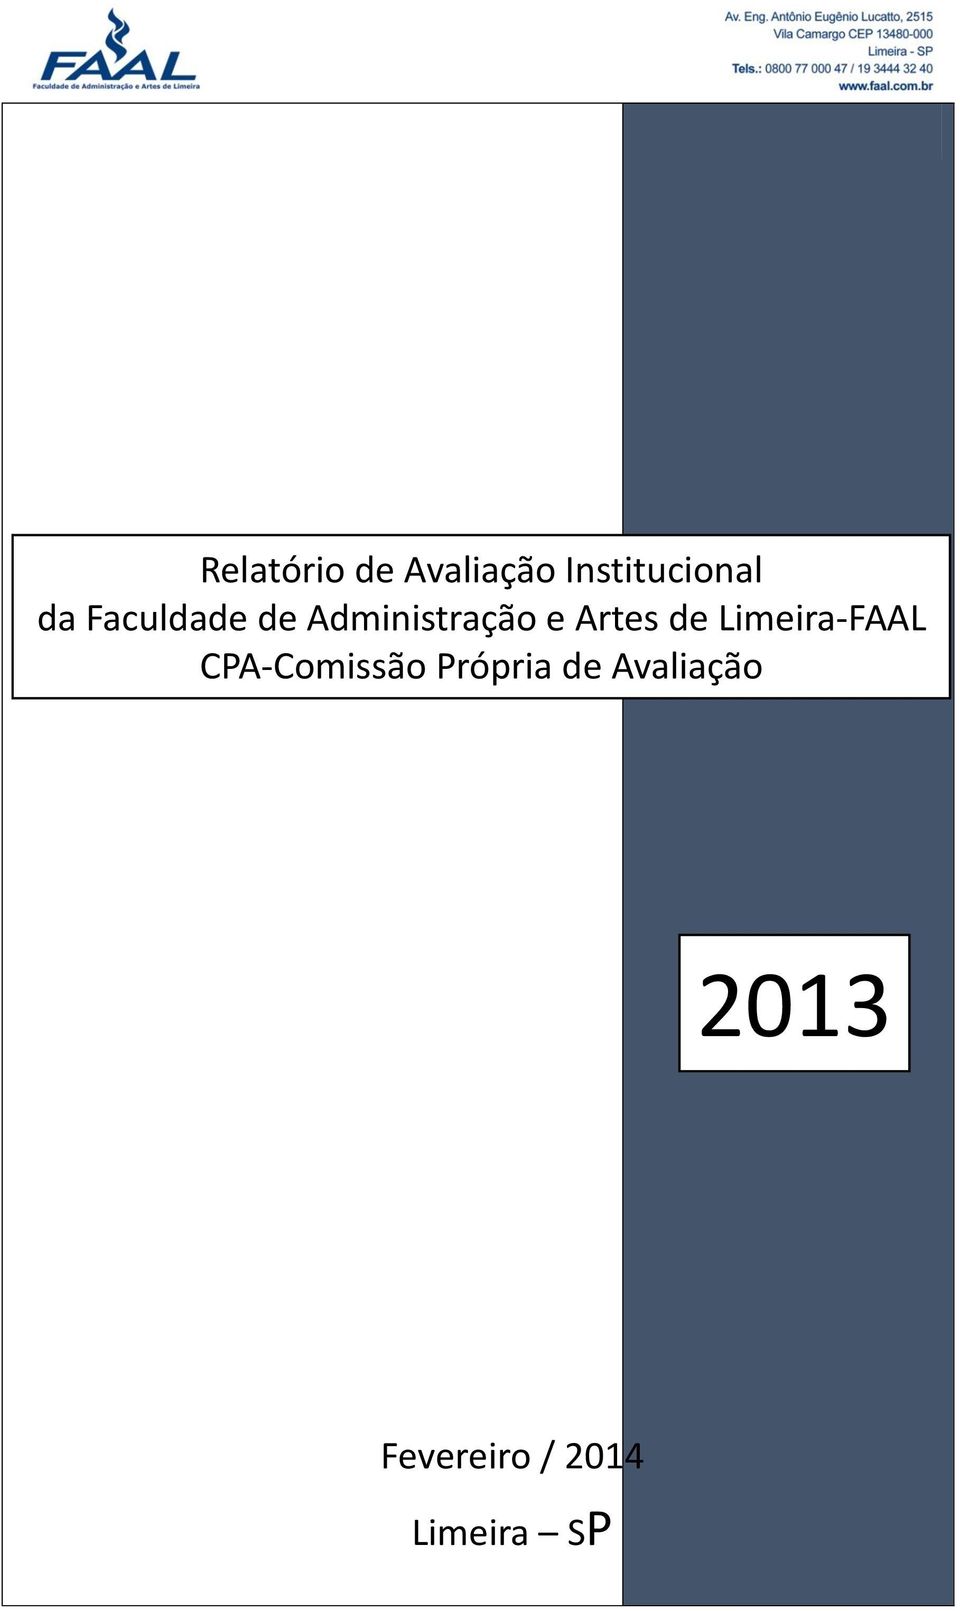 de Limeira-FAAL CPA-Comissão Própria